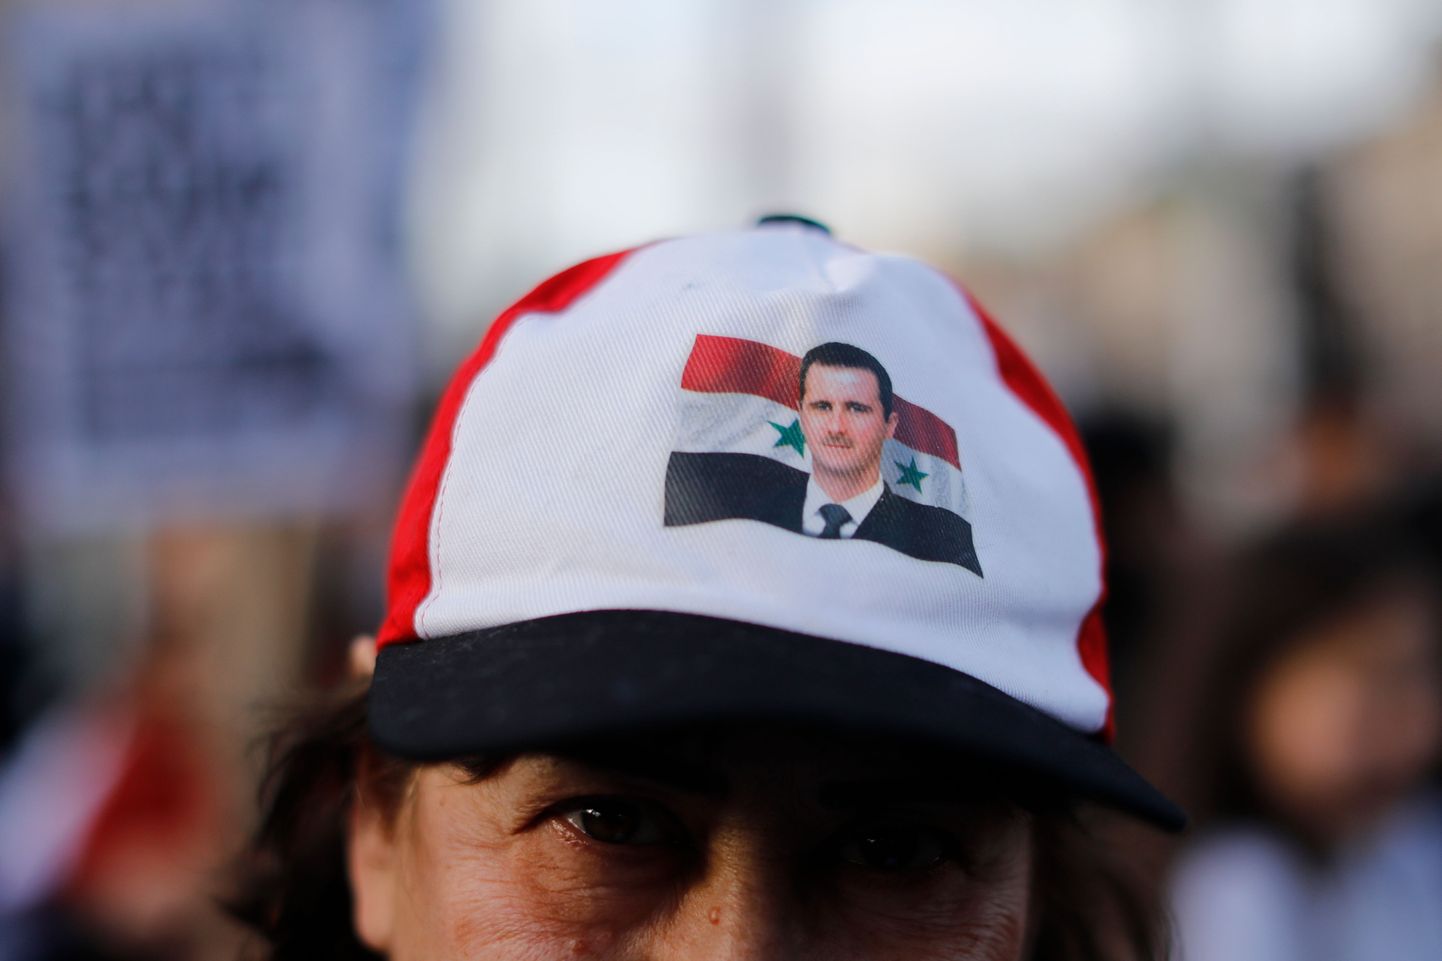 Süüria president Bashar al-Assadi toetaja.